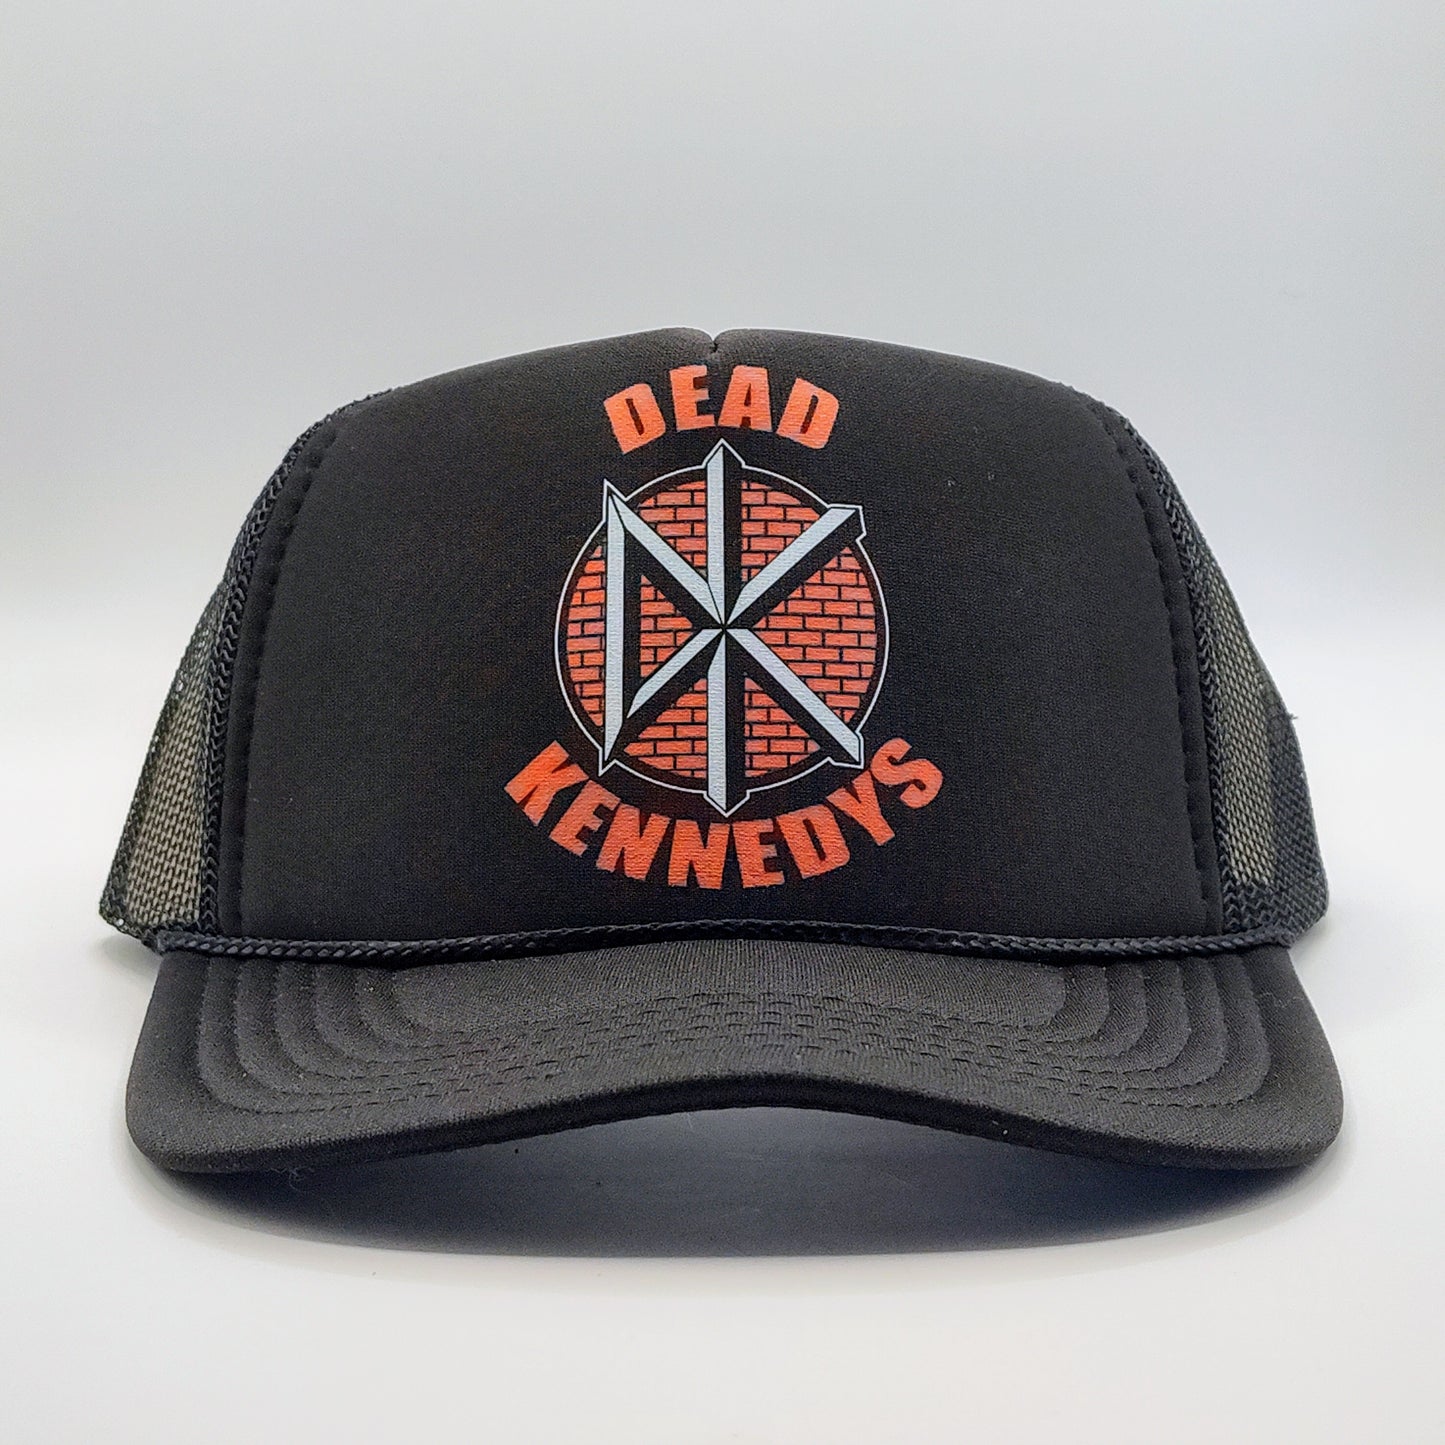 Dead Kennedys Trucker Hat